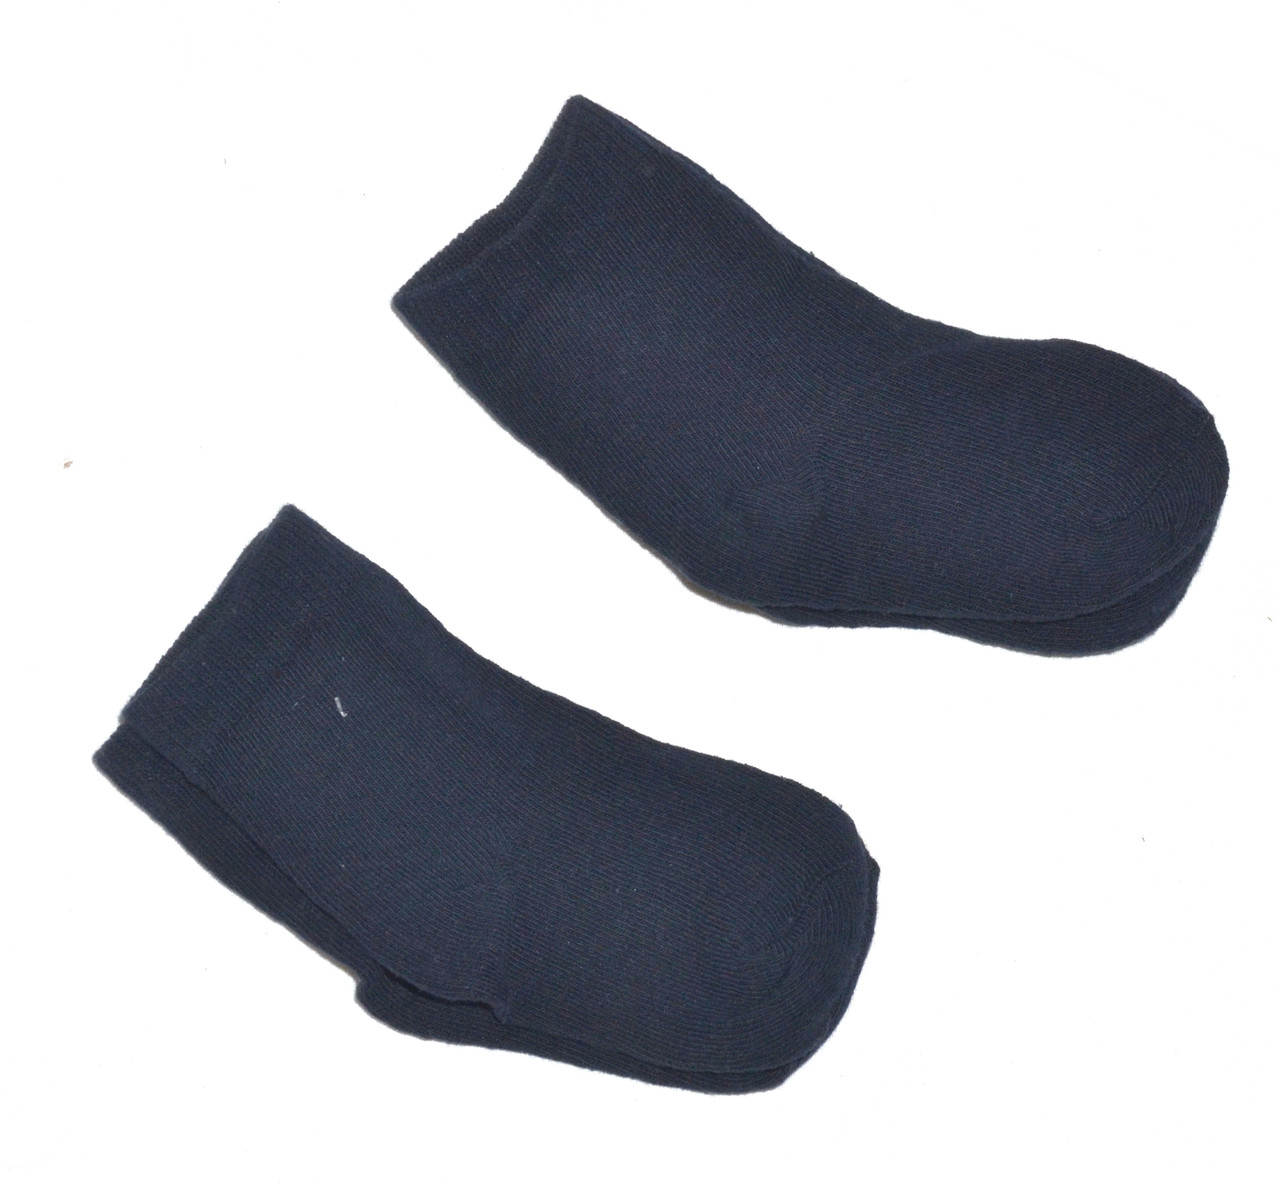 Сет из 2х пар высоких носков LIDL на размер 19-22